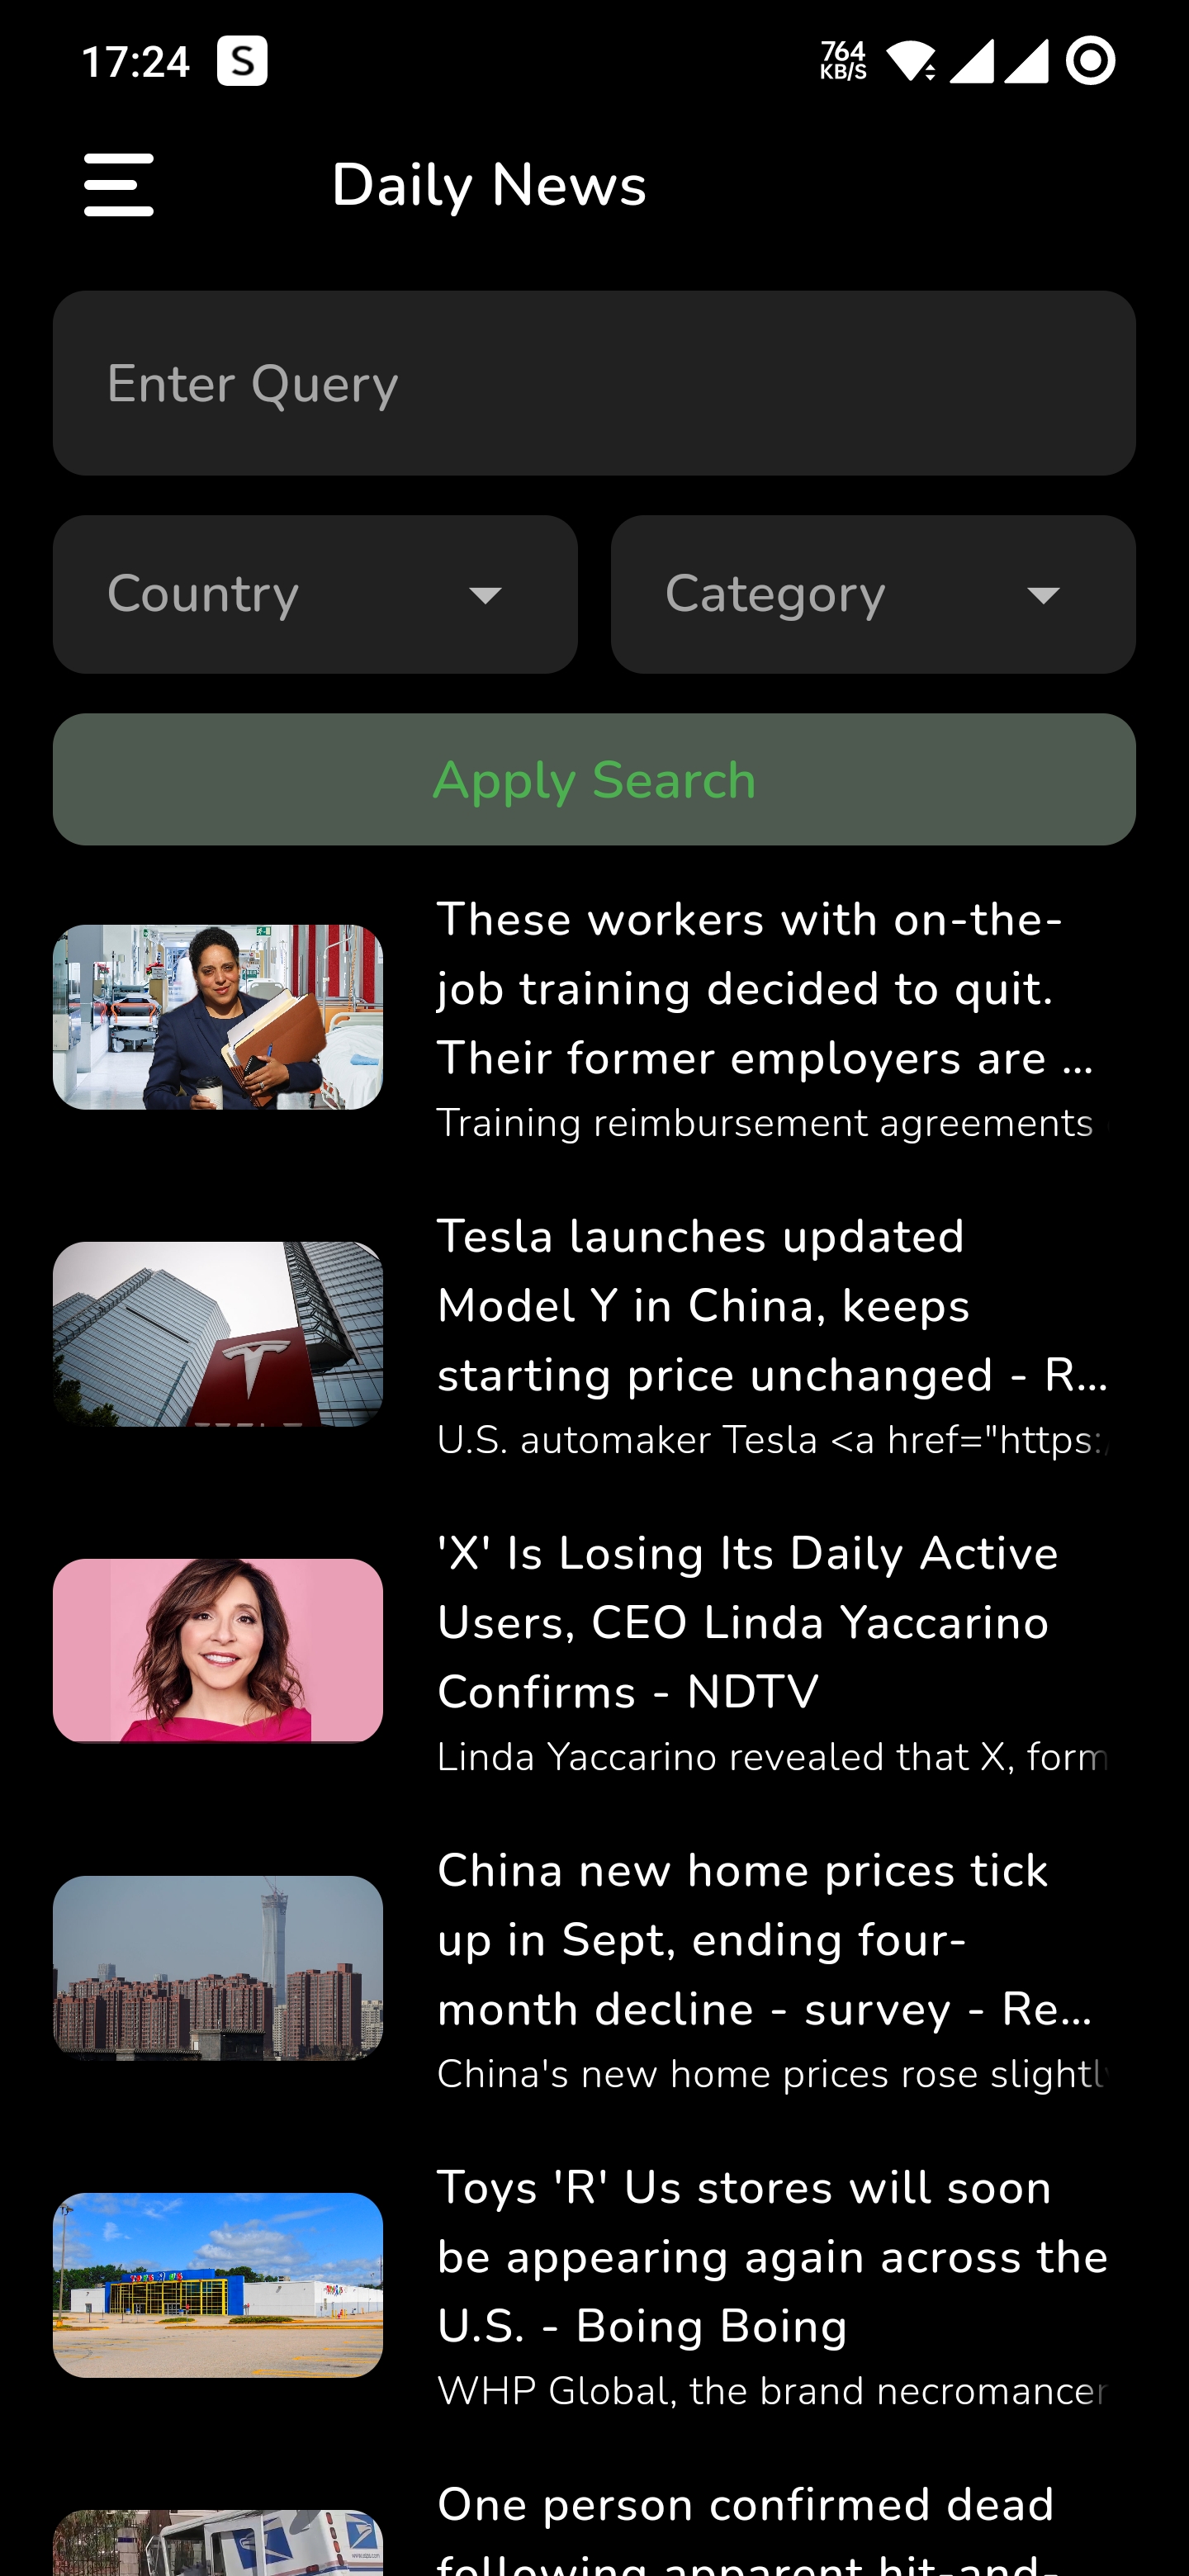 A Flutter app showcasing daily news articles